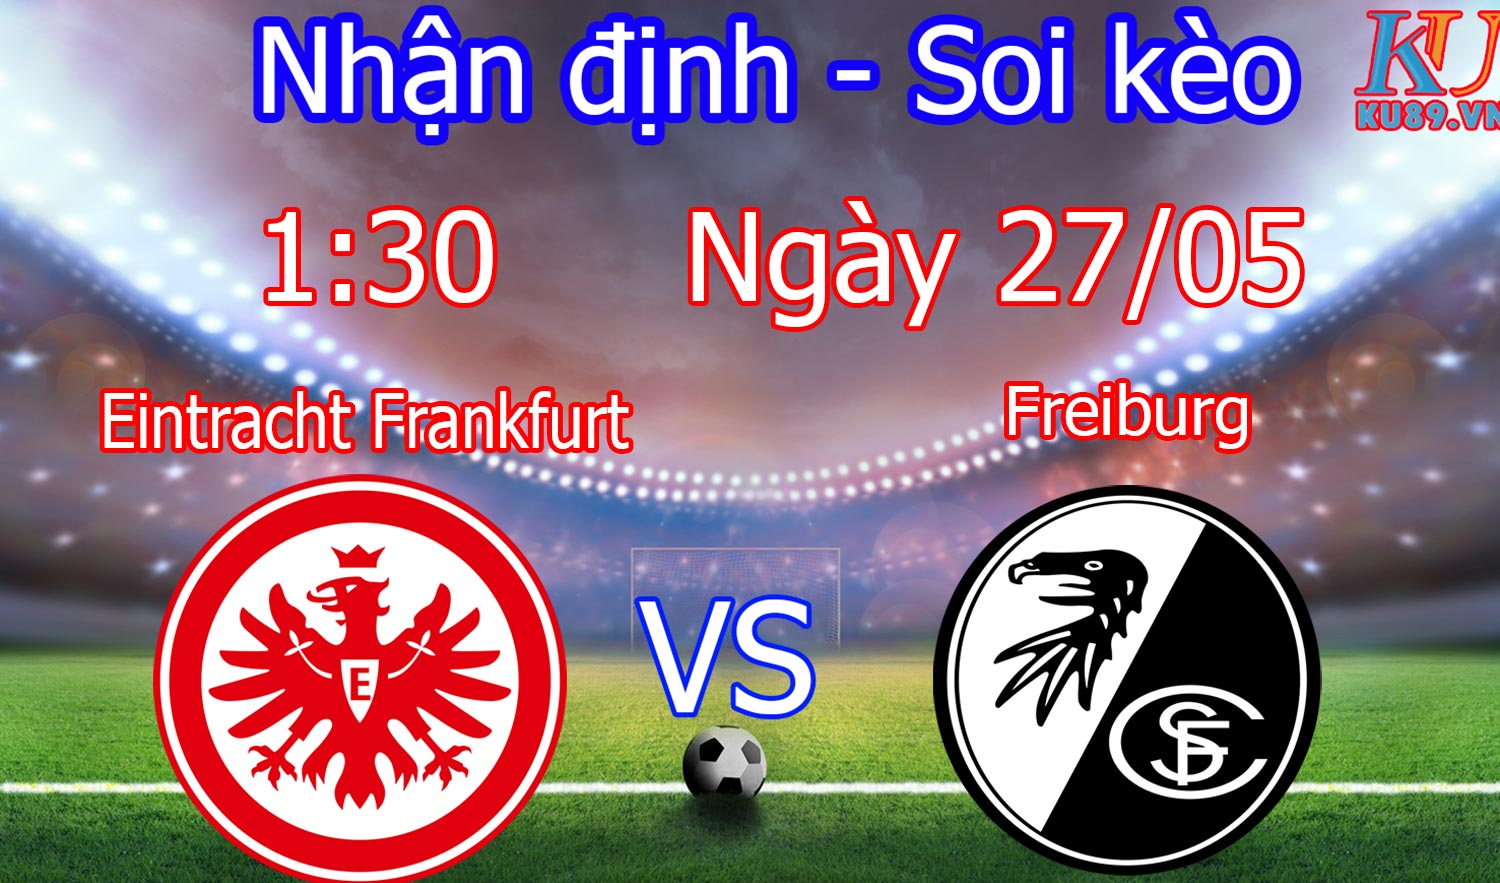 Eintracht Frankfurt – Freiburg